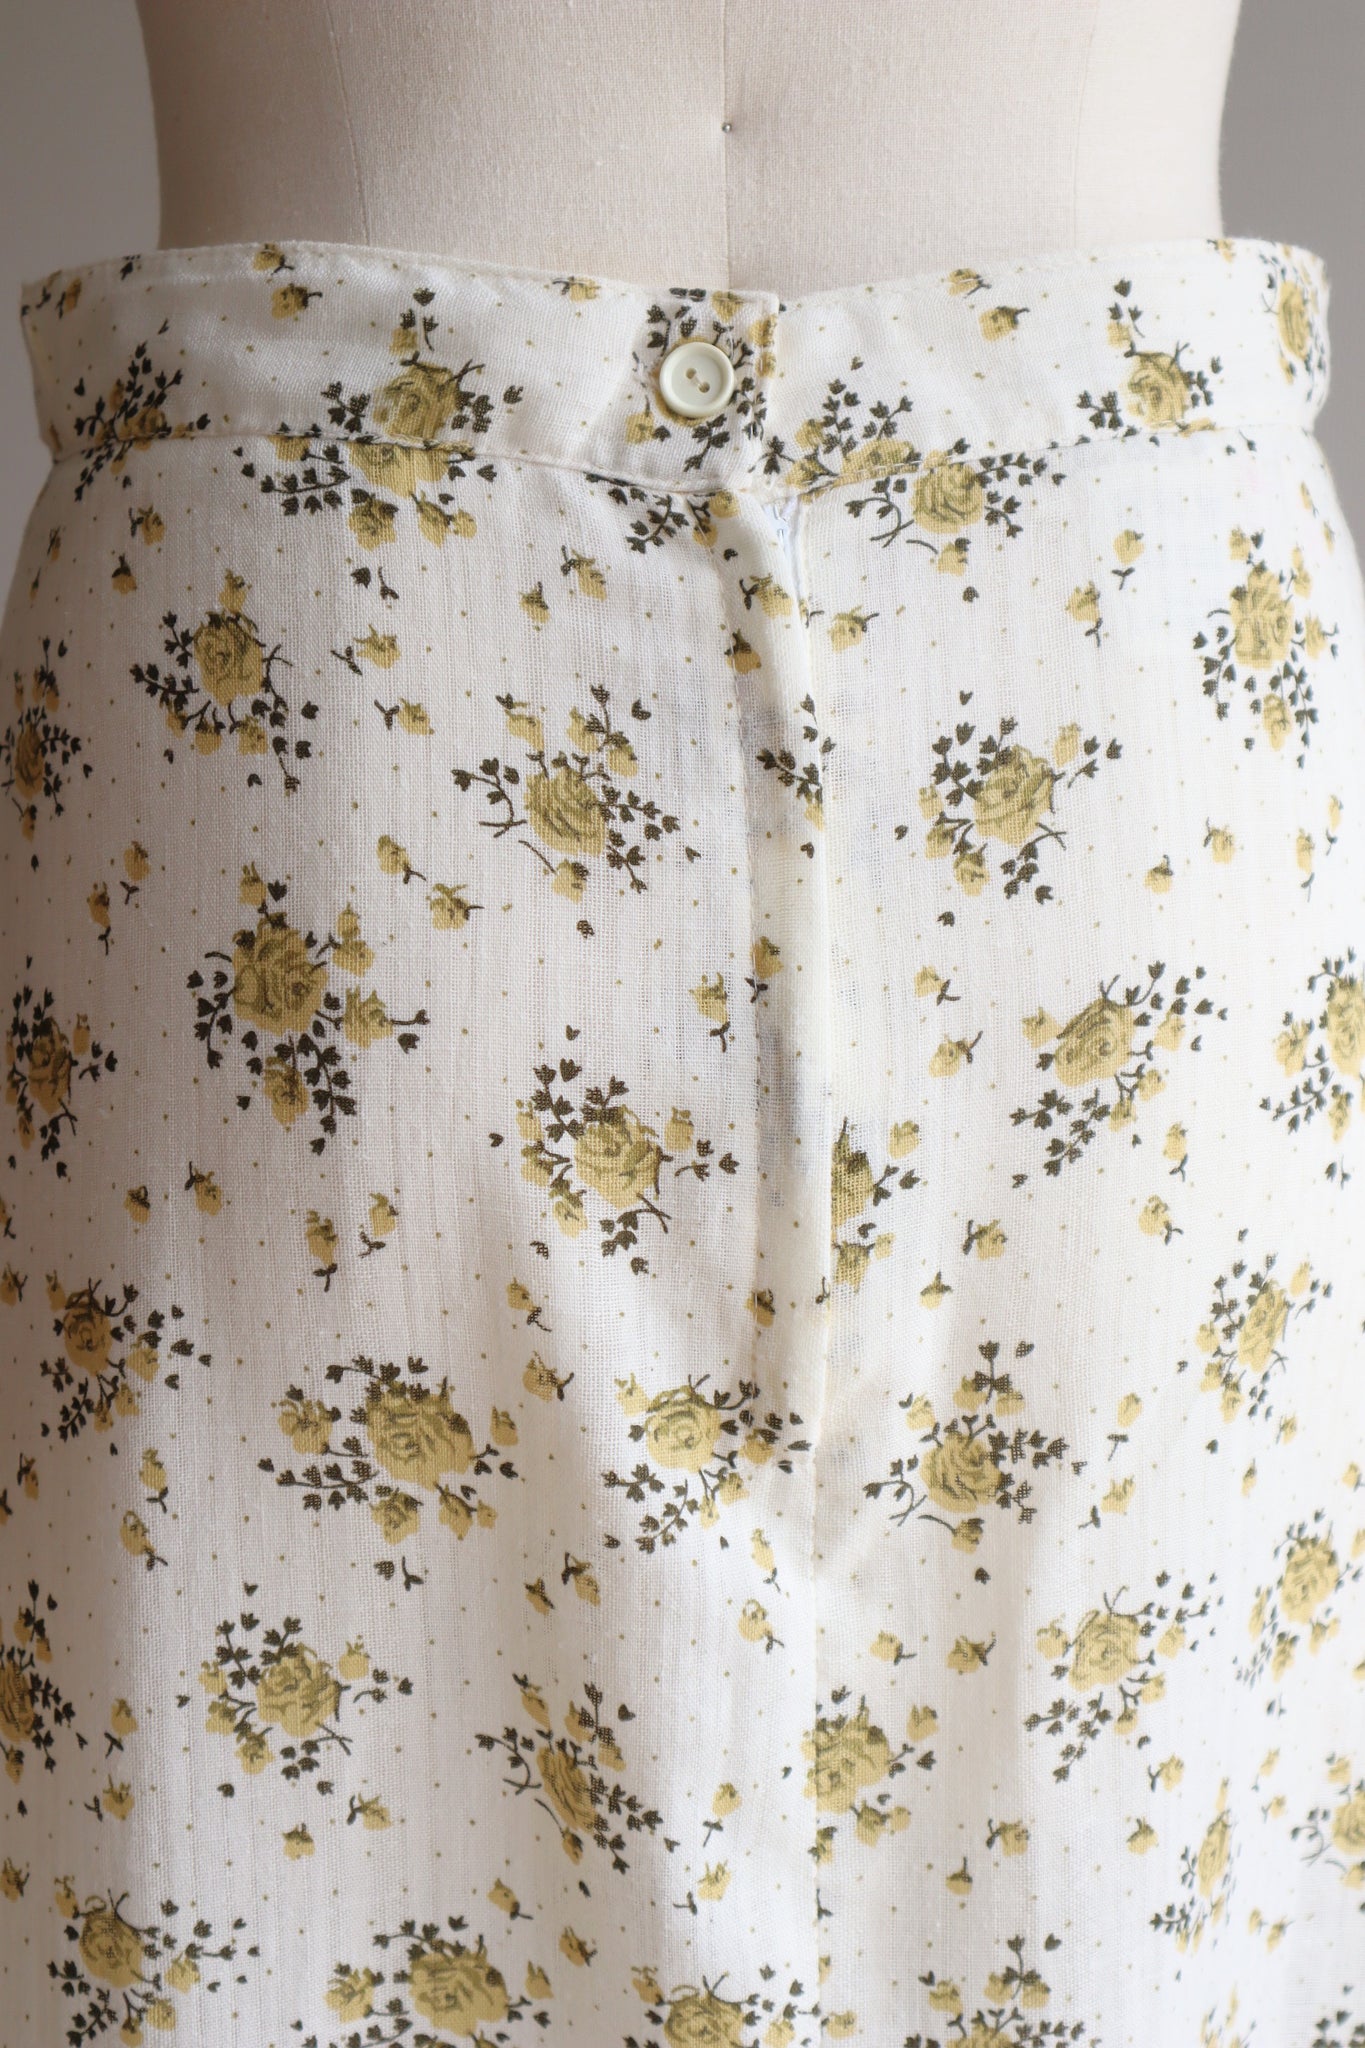 70s Floral Cotton Gauze Skirt